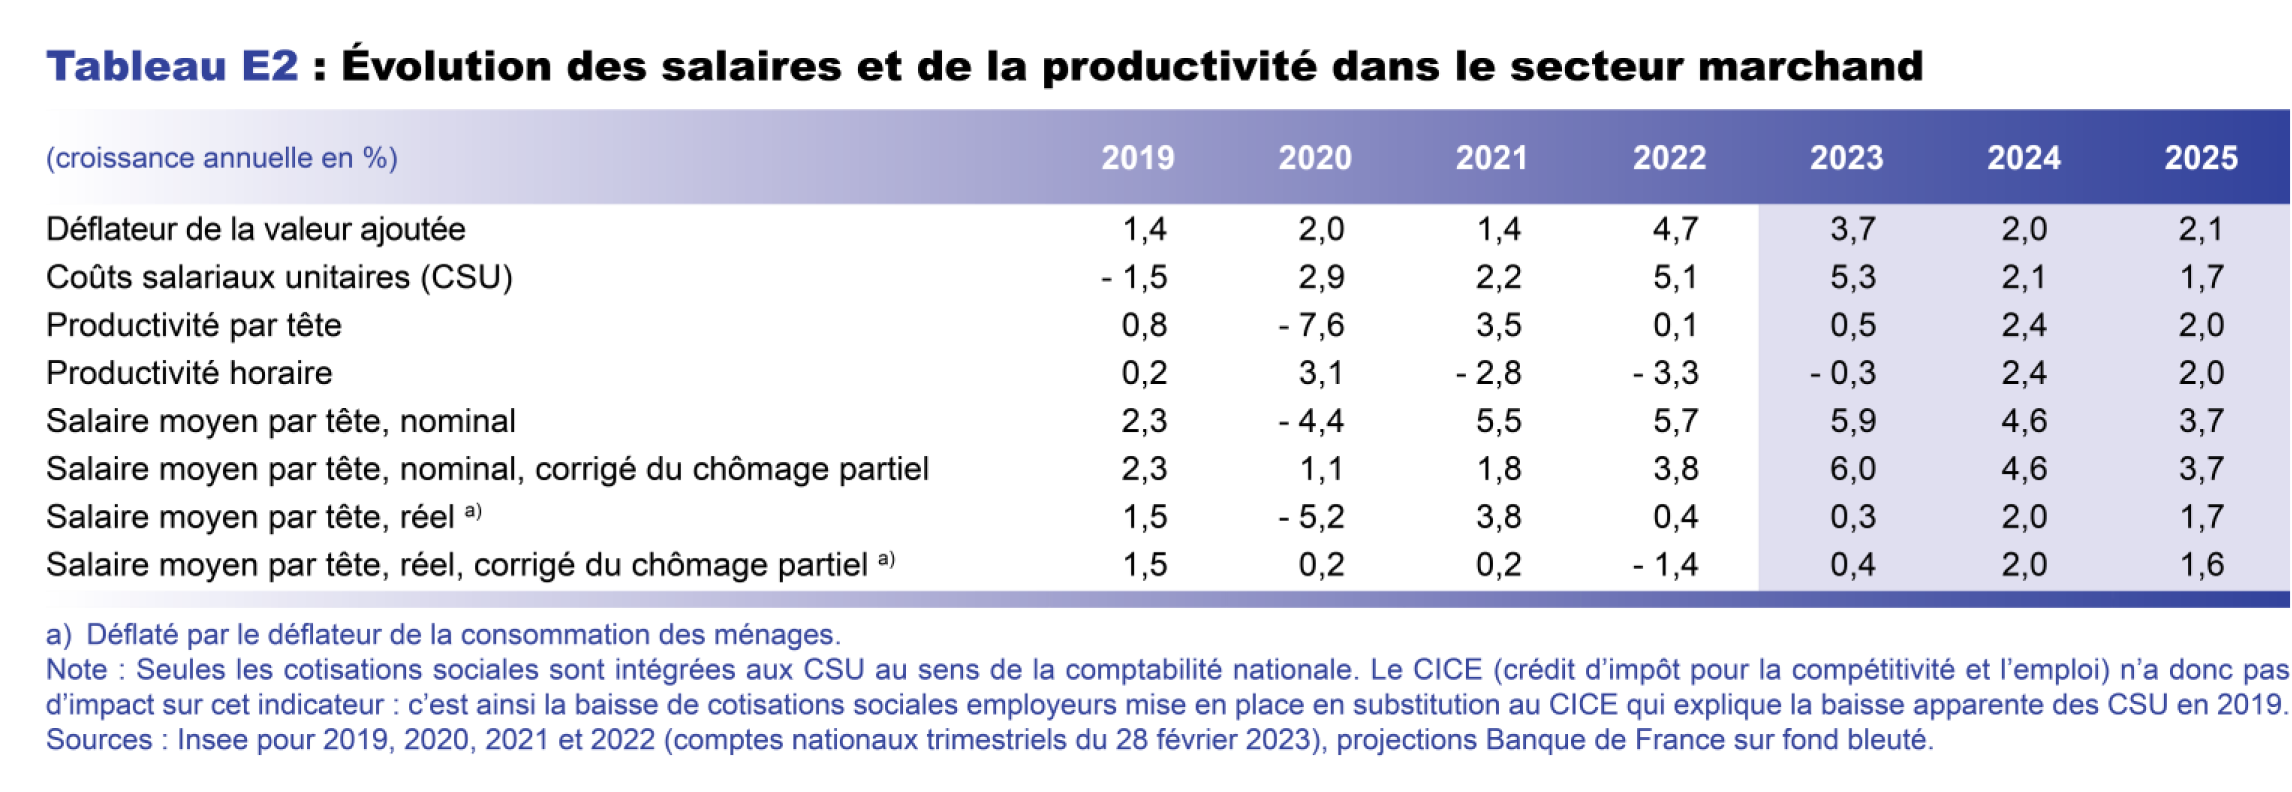 Projections macro mars 2023 - Evolution des salaires et de la productivité dans le secteur marchand